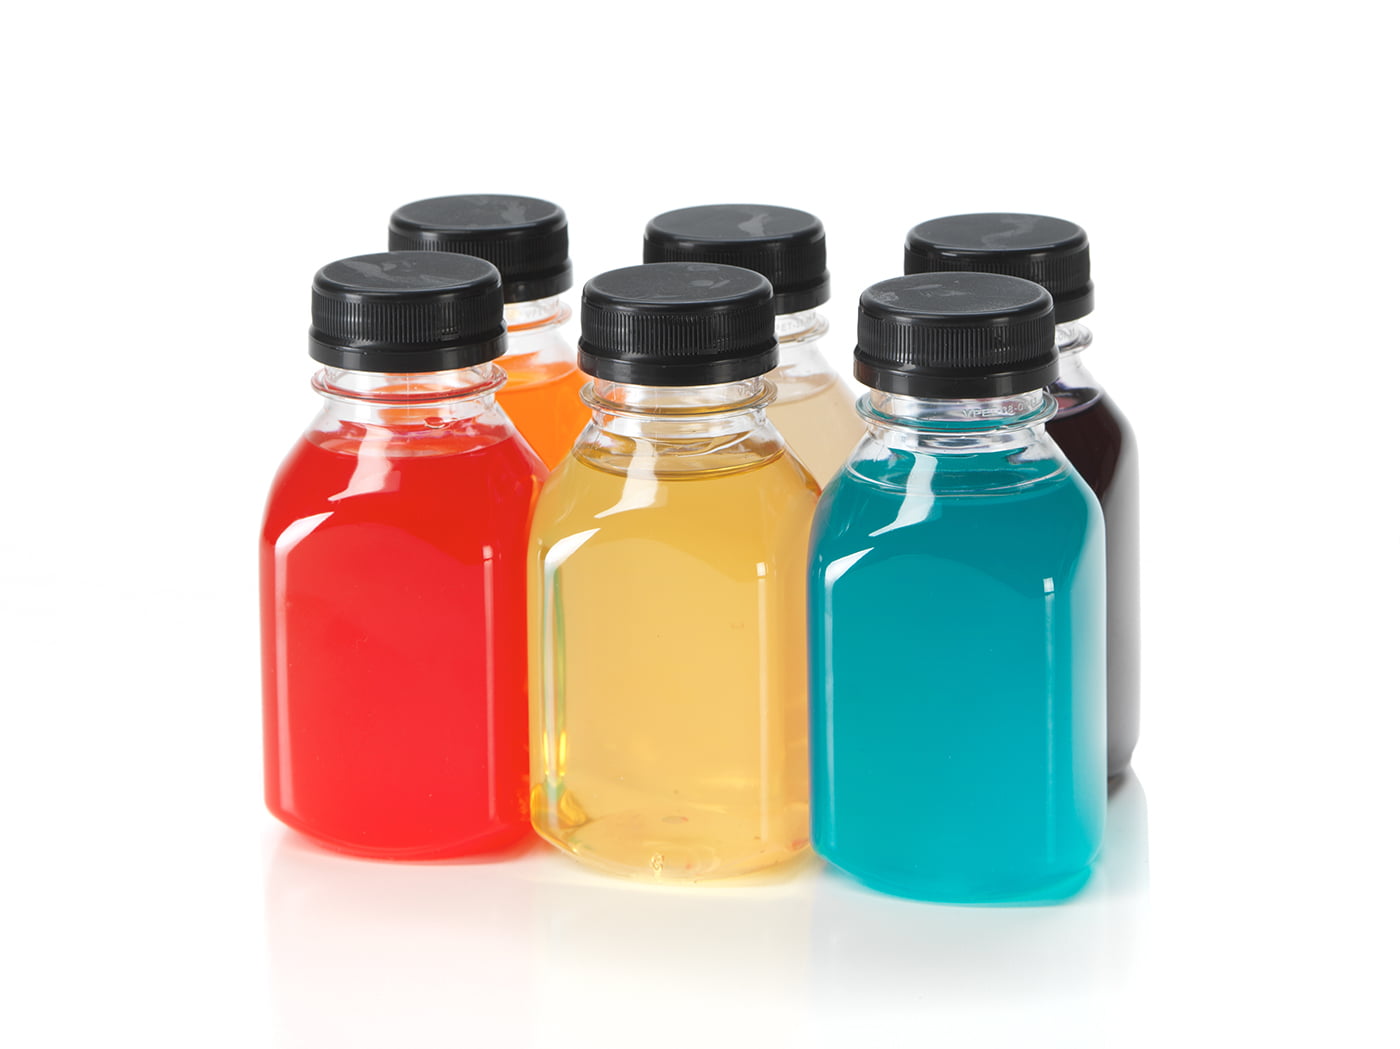 Set of 8oz Glass Bottles with Black Plastic Caps | Reusable Stout Flint  Glass Bottles with Lids for …See more Set of 8oz Glass Bottles with Black